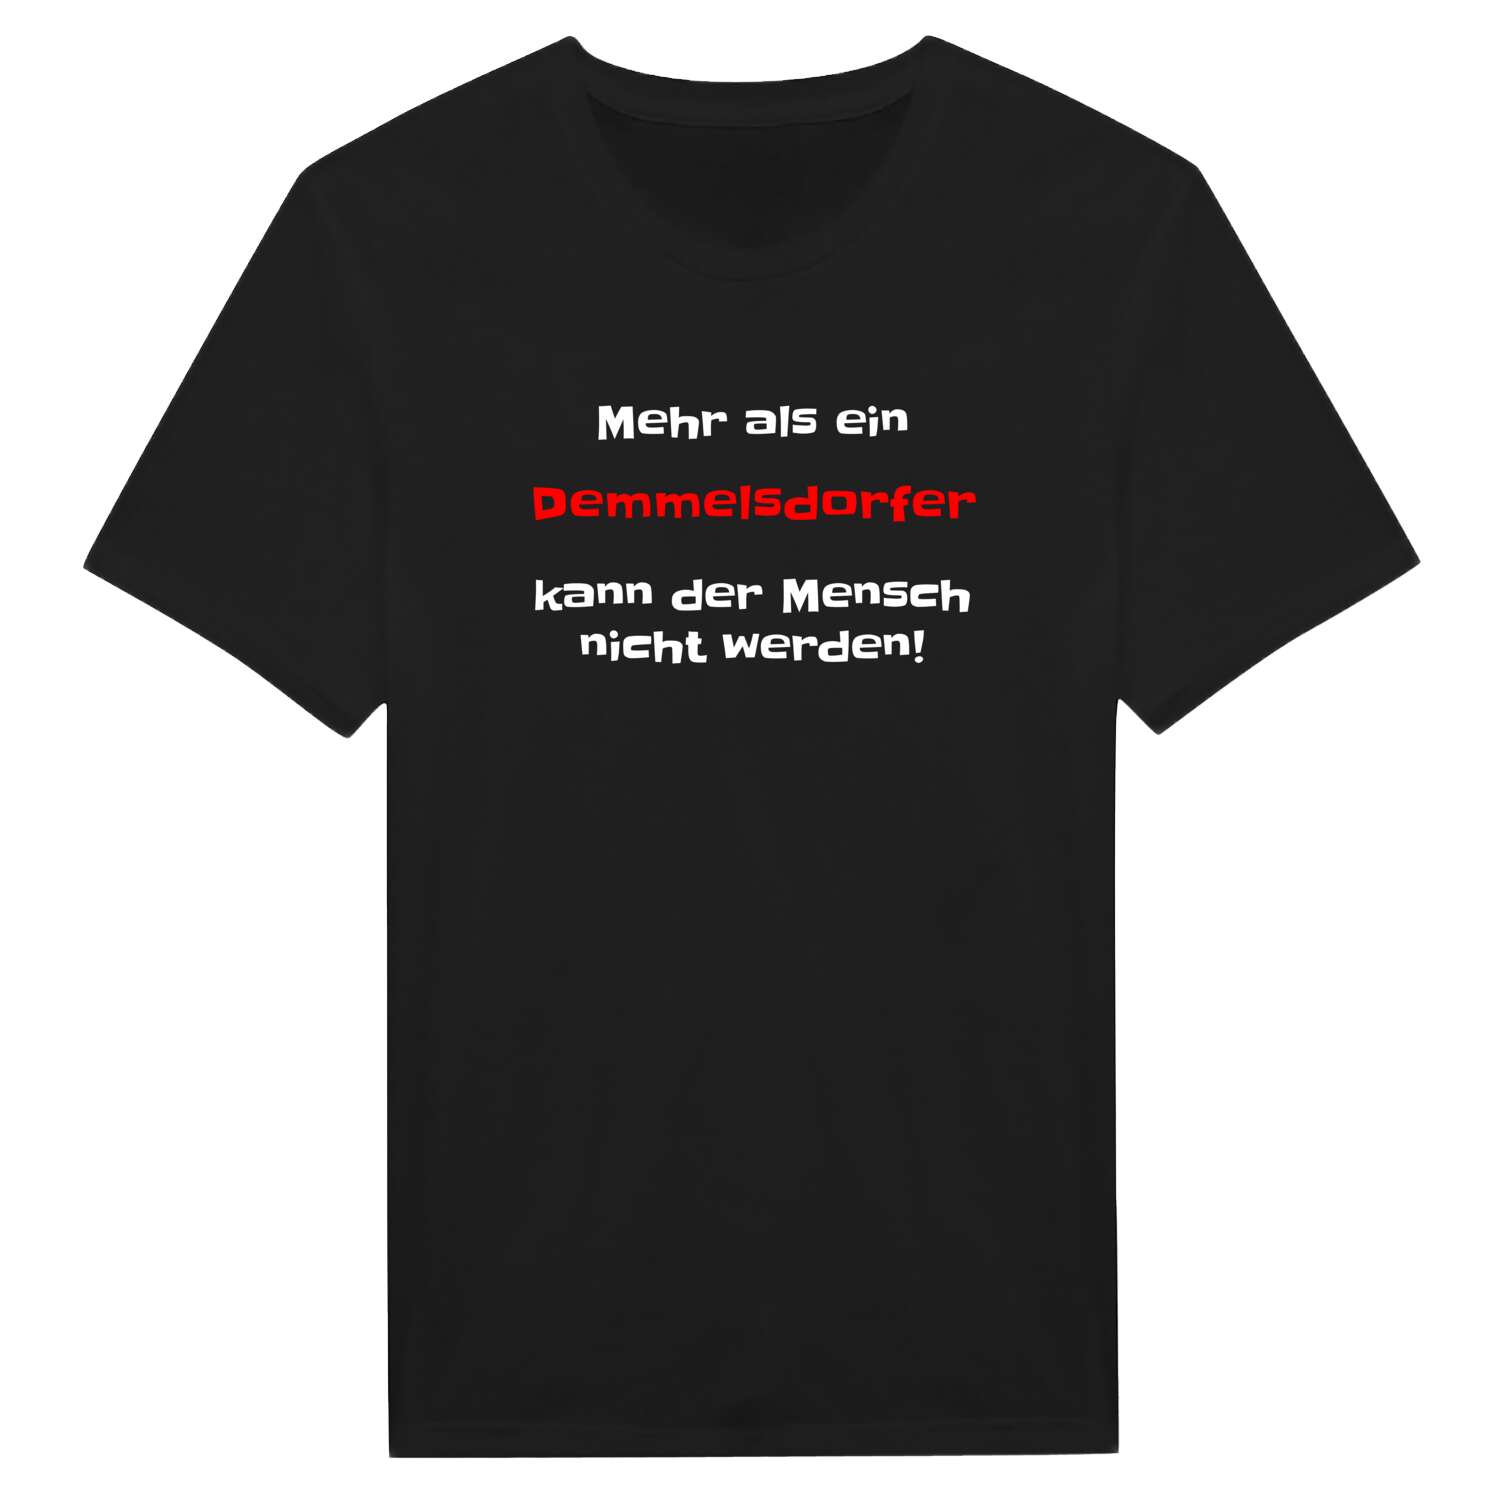 Demmelsdorf T-Shirt »Mehr als ein«